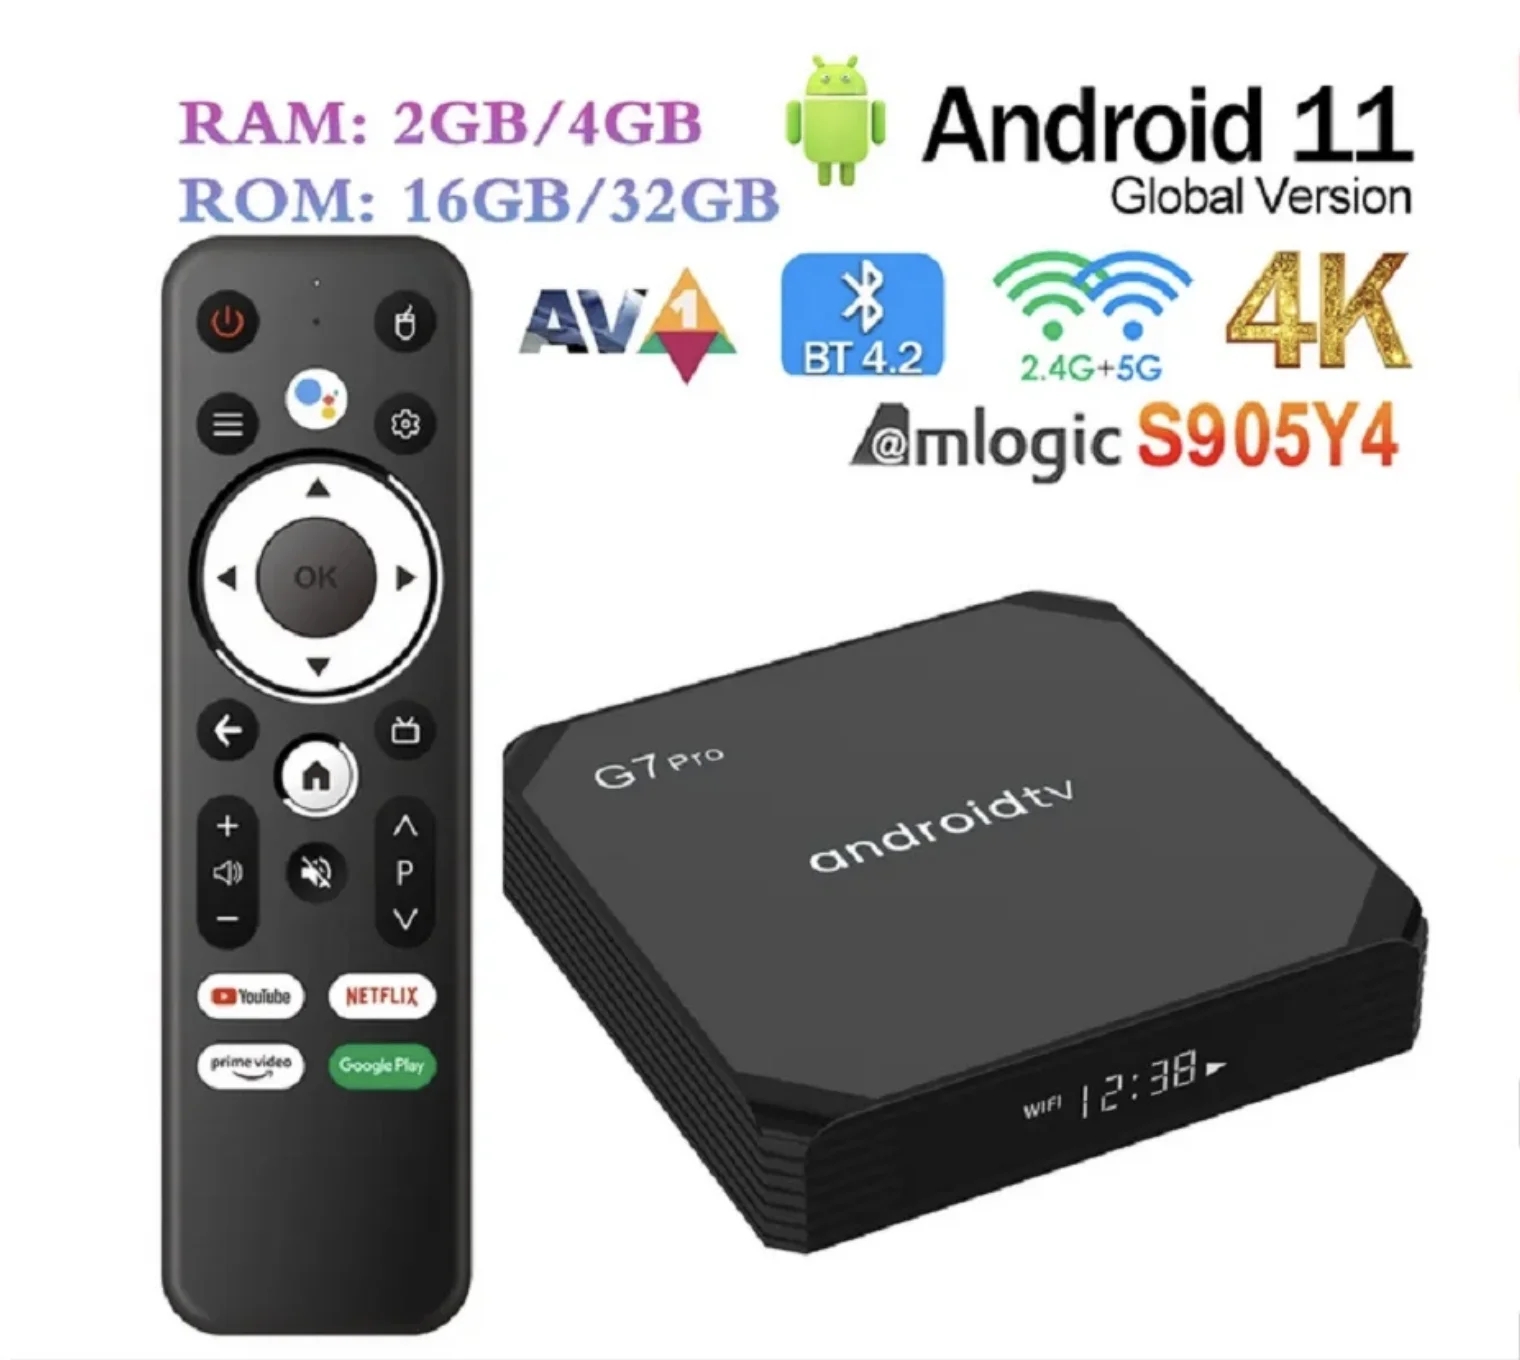 G7 Pro Smart ATV Android 11 TV Box Amlogic S905Y4 2GB 16GB / 4GB 32GB BT AVI 2.4G / 5G WIFI 4K HDR Media Player Set Top Box